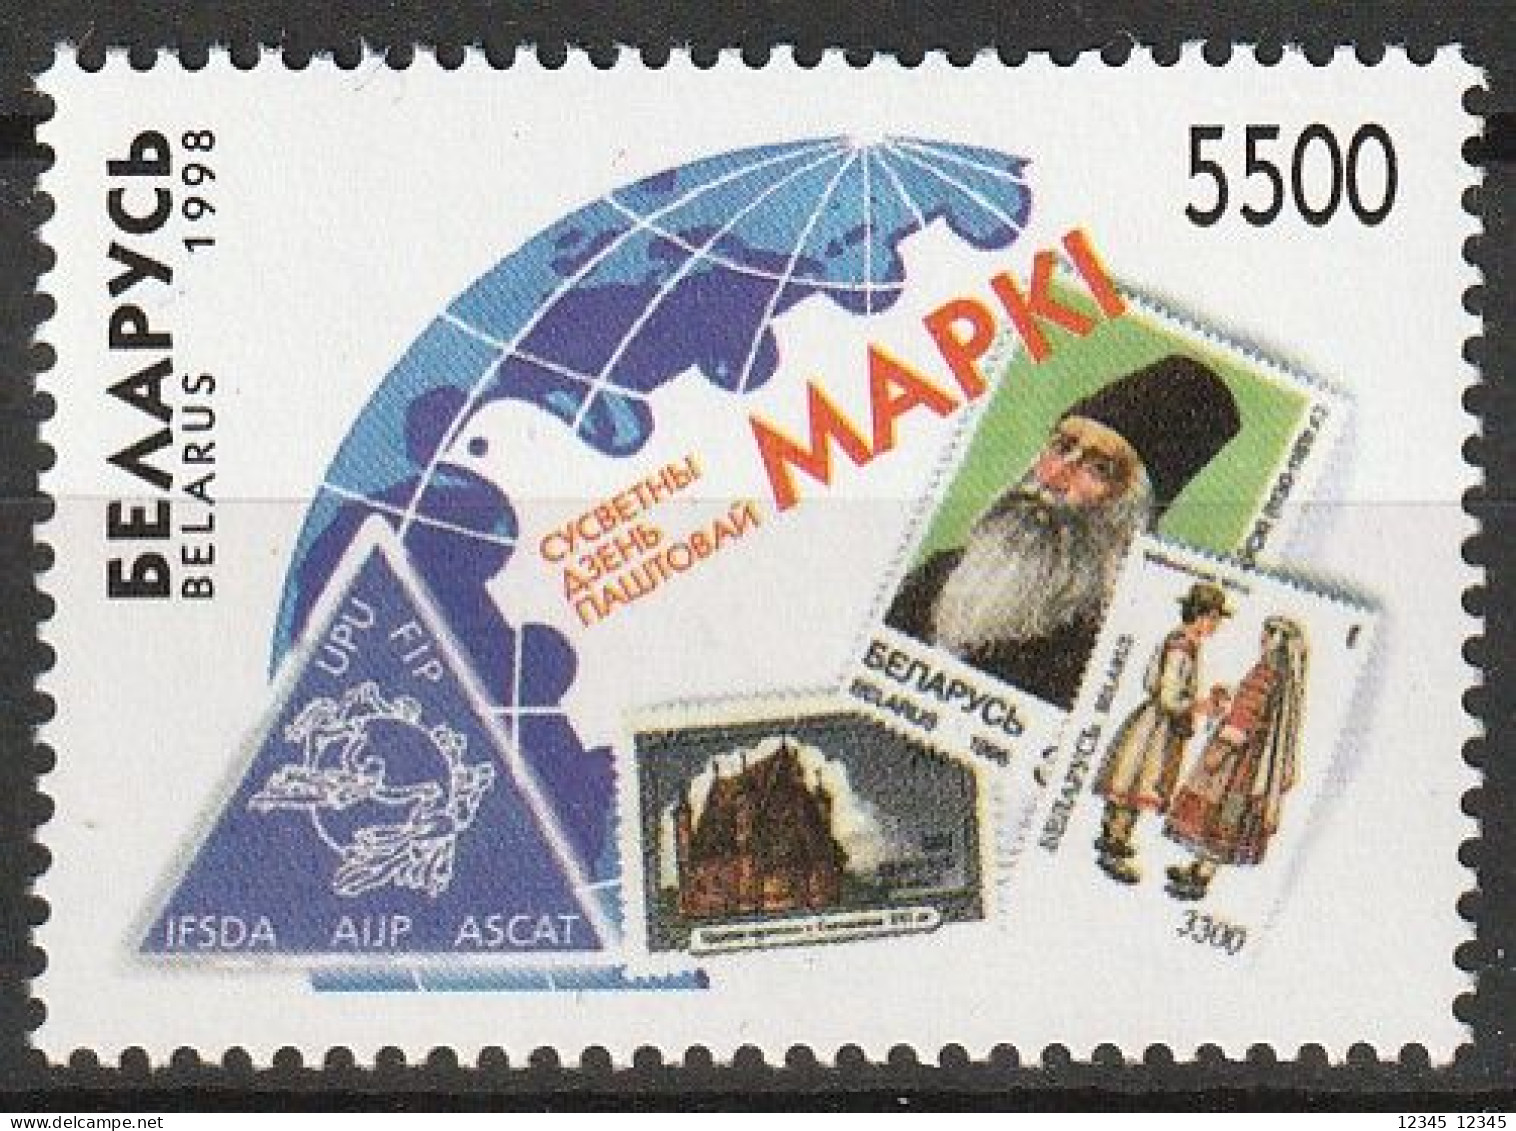 Wit Rusland 1998, Postfris MNH, World Post Day. - Belarus